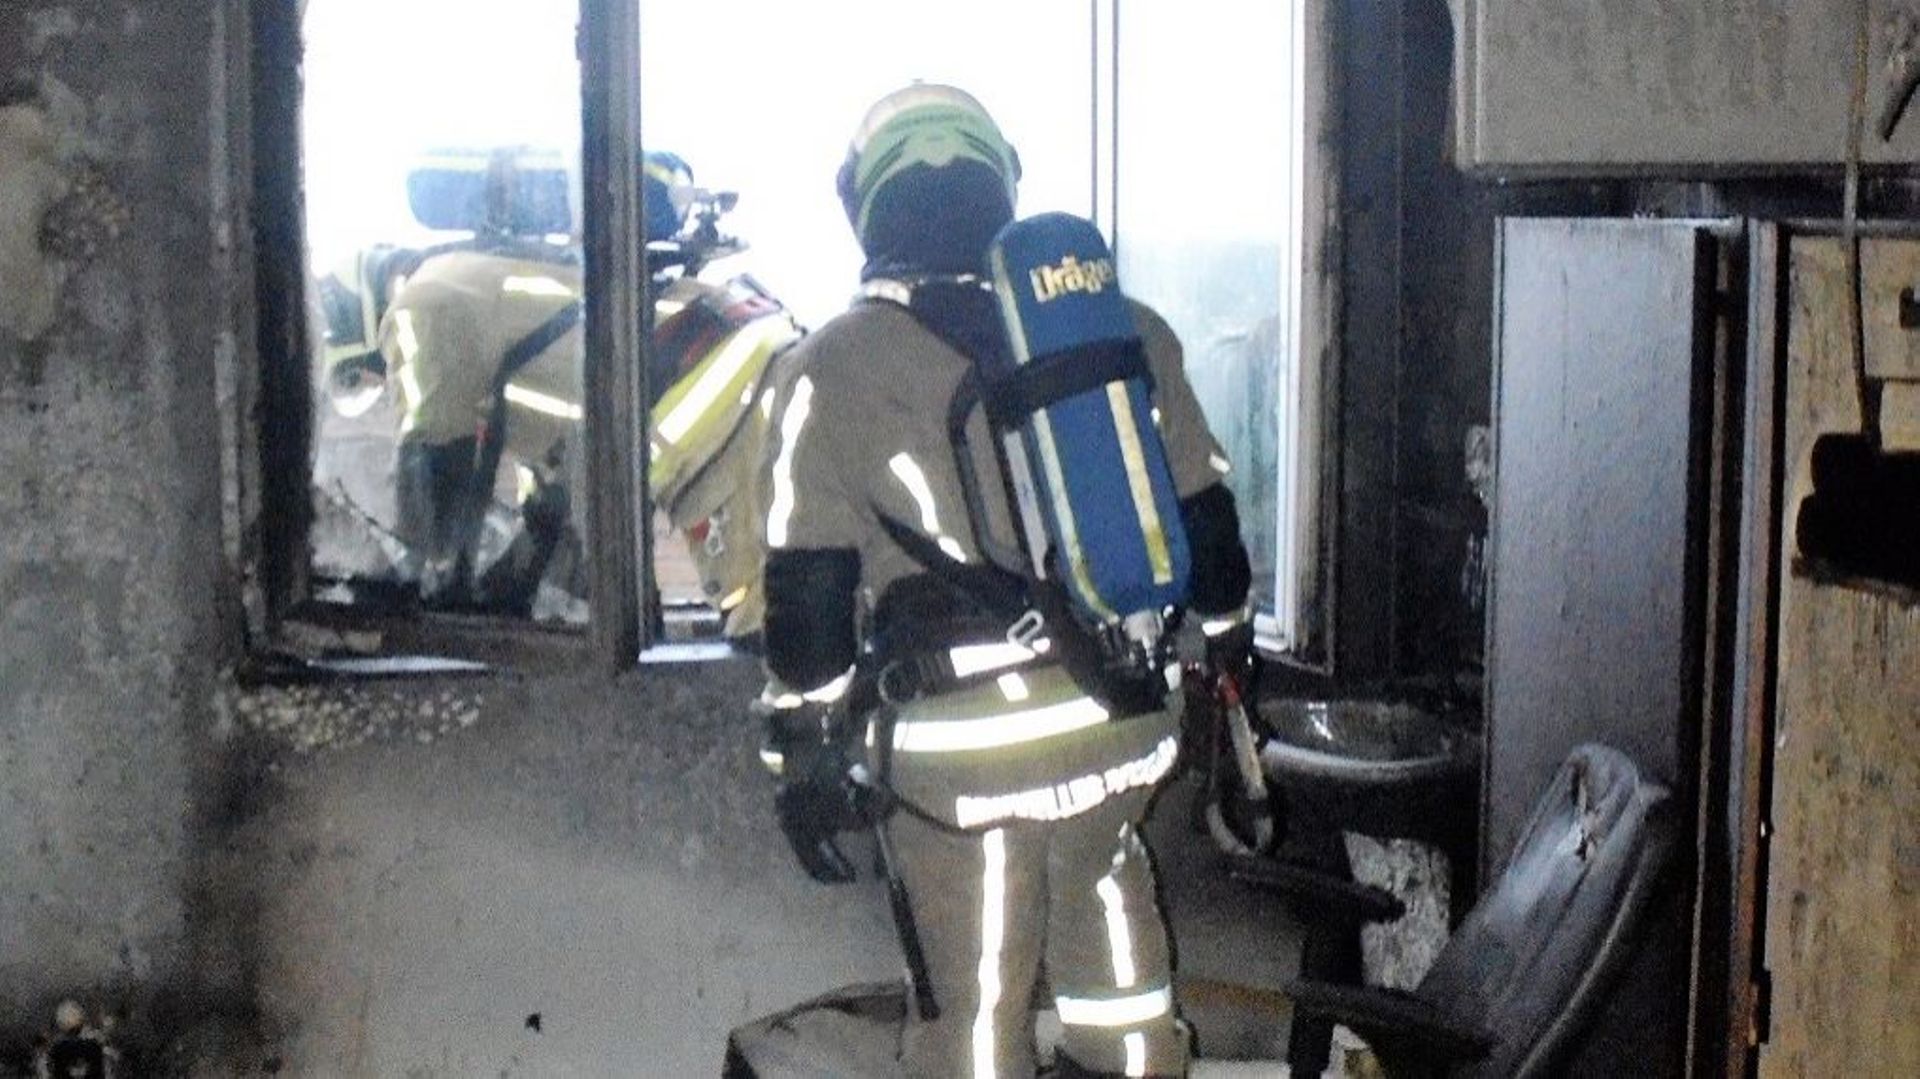 Incendie au 27e étage d'un immeuble à Molenbeek-Saint-Jean 